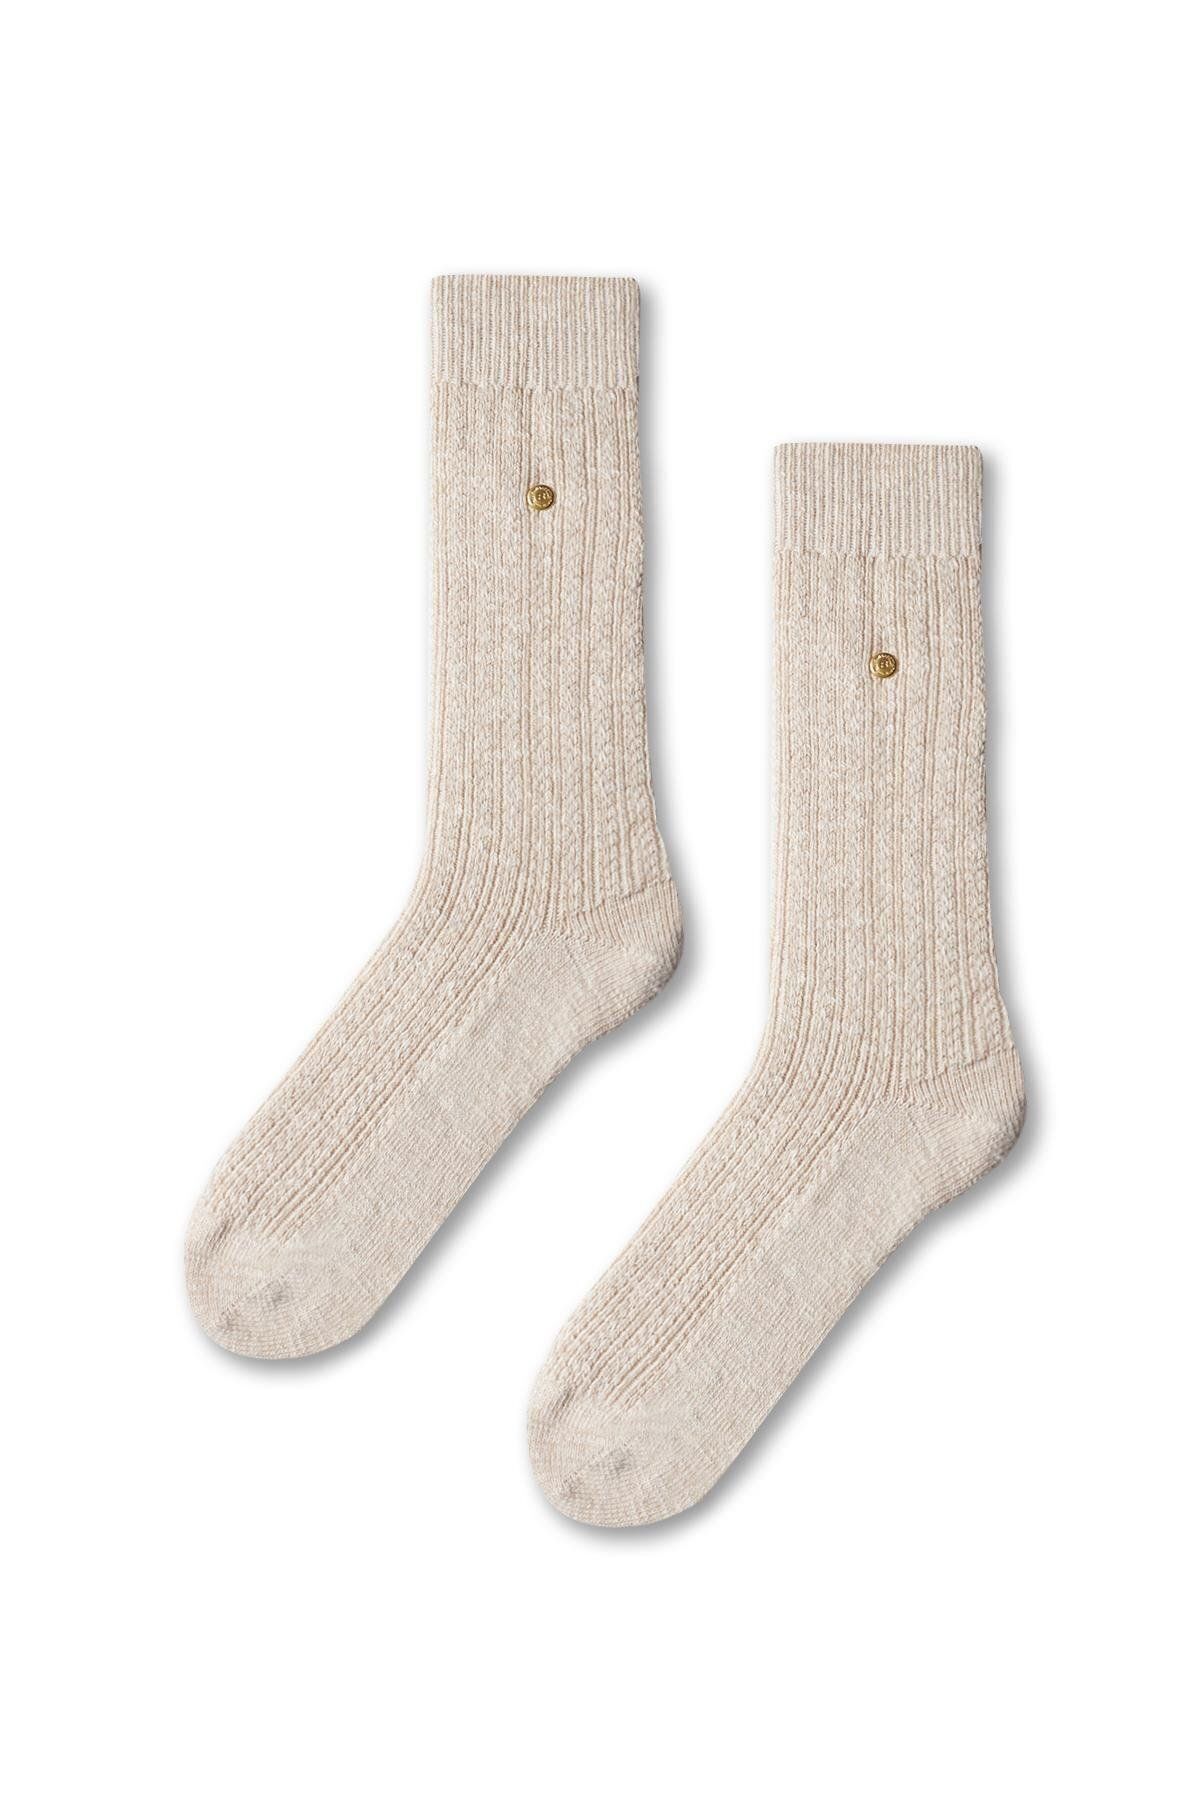 Katia & Bony Kadın Desenli Kalın Soket Çorap BEJ